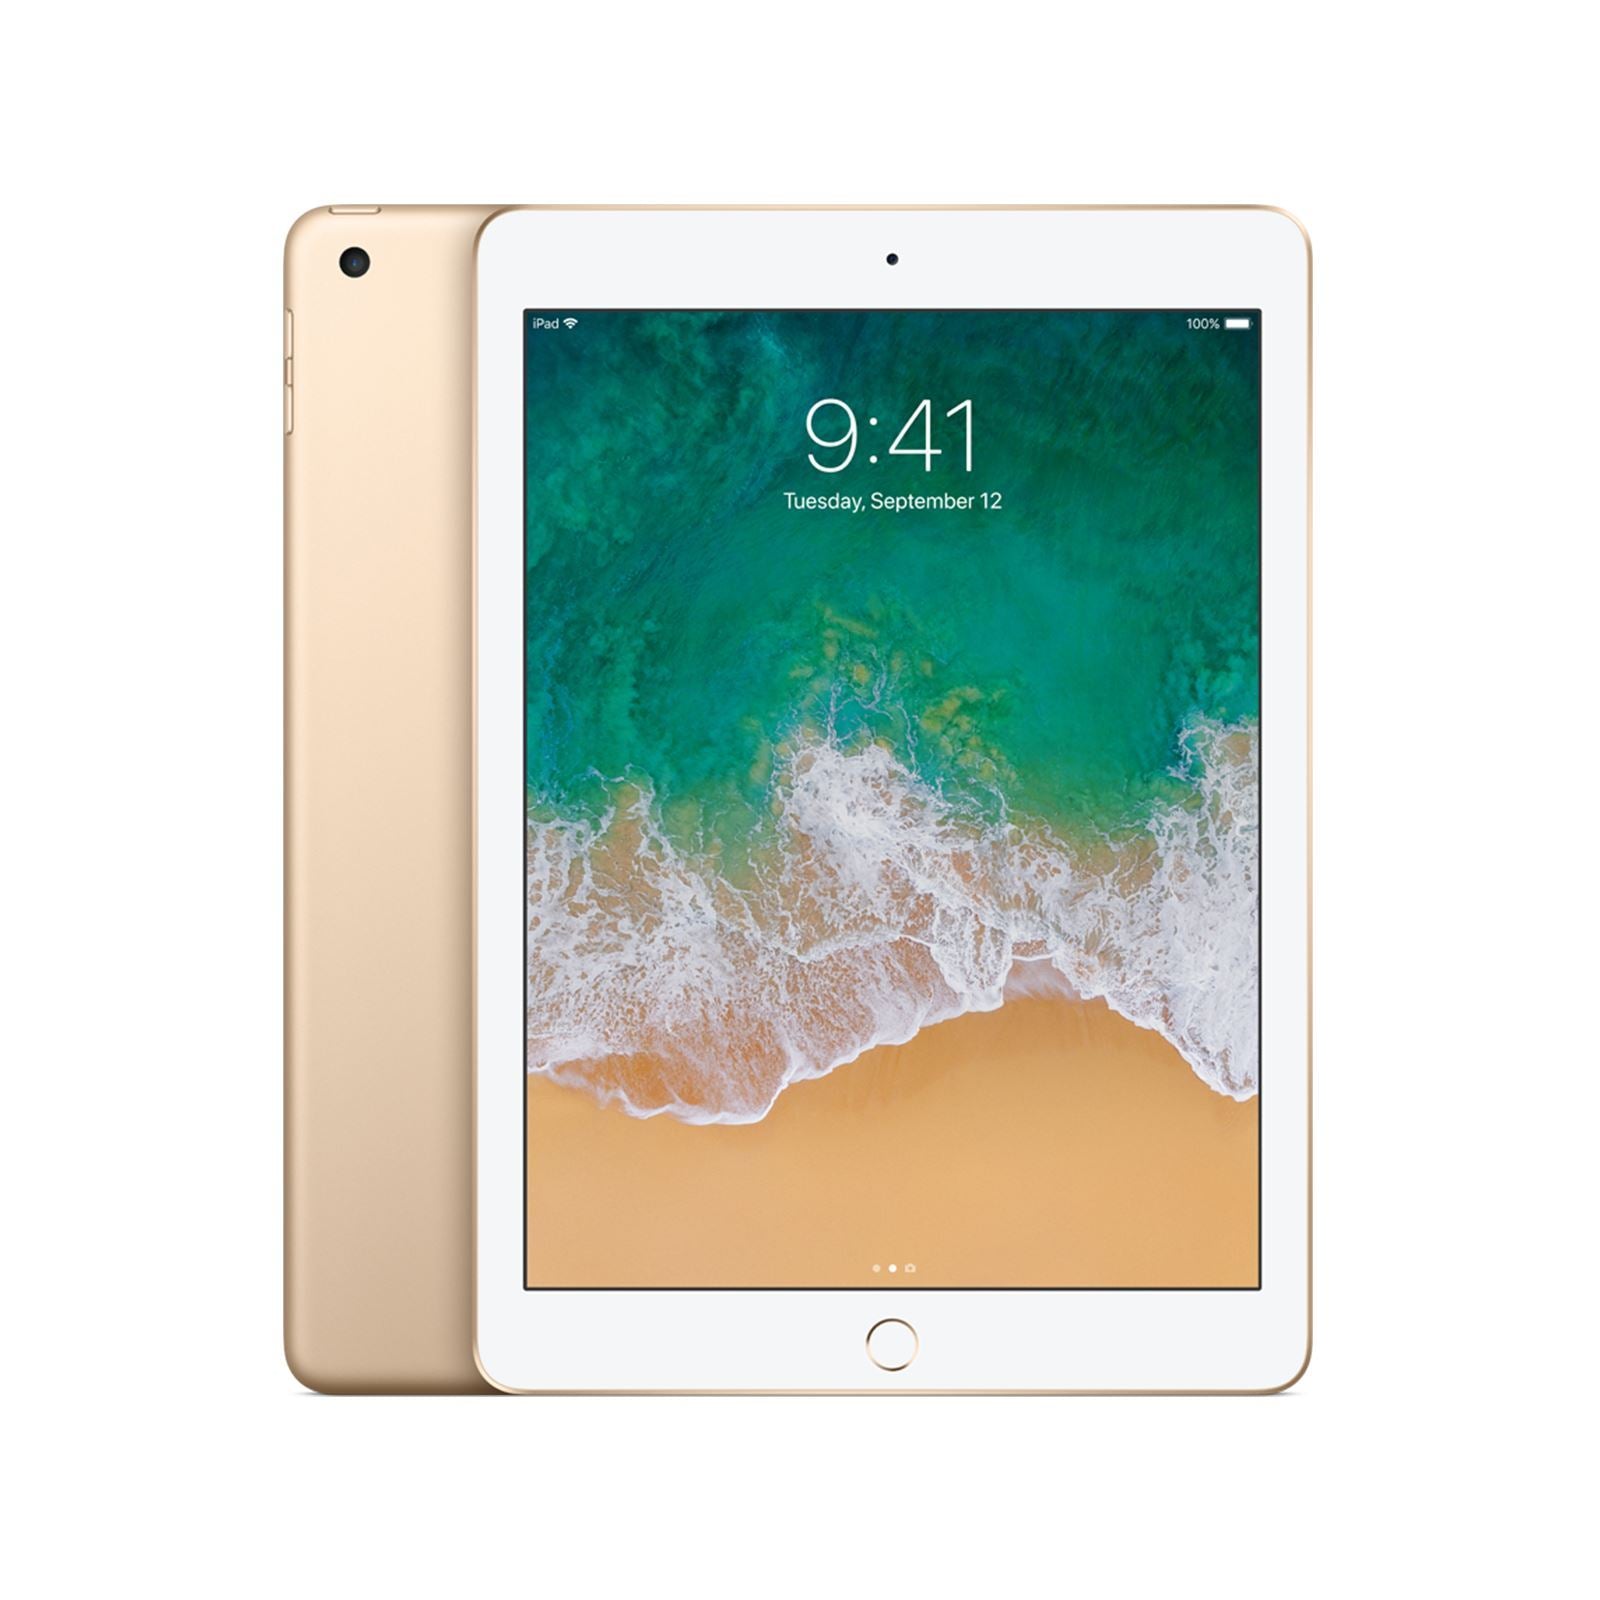 Apple iPad 5th Gen 32GB WiFi 4G Gold Unlocked Refurbished Pristine